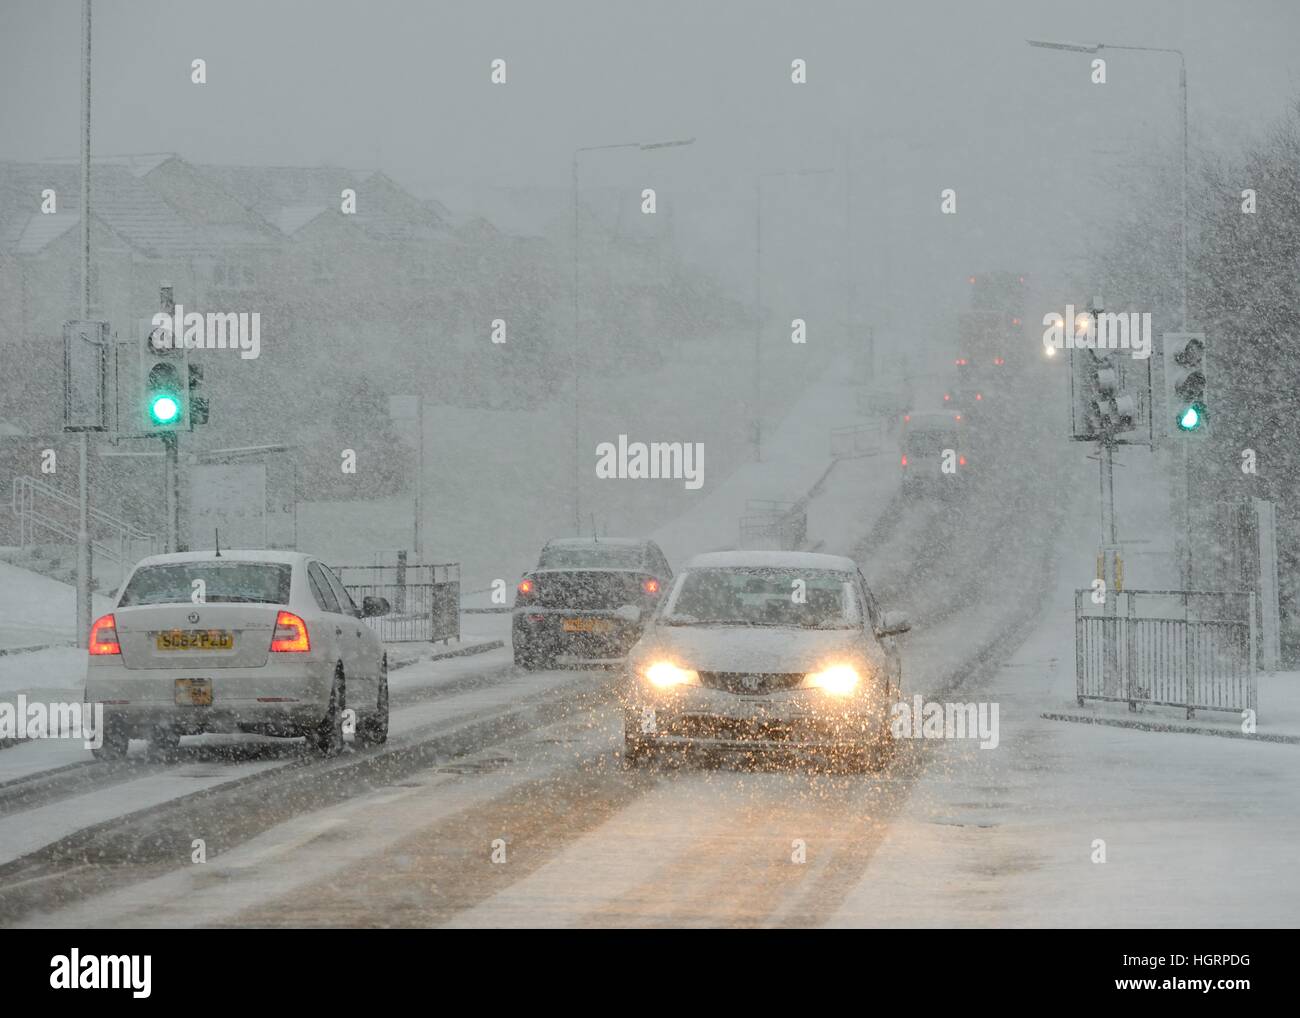 Parkhouse Road, Glasgow, Écosse, Royaume-Uni. 12th, janvier 2017. Temps d'hiver. Comme prévu, la neige est arrivée en Écosse aujourd'hui, rendant les conditions de conduite dangereuses sur les routes en raison de la visibilité réduite. Banque D'Images